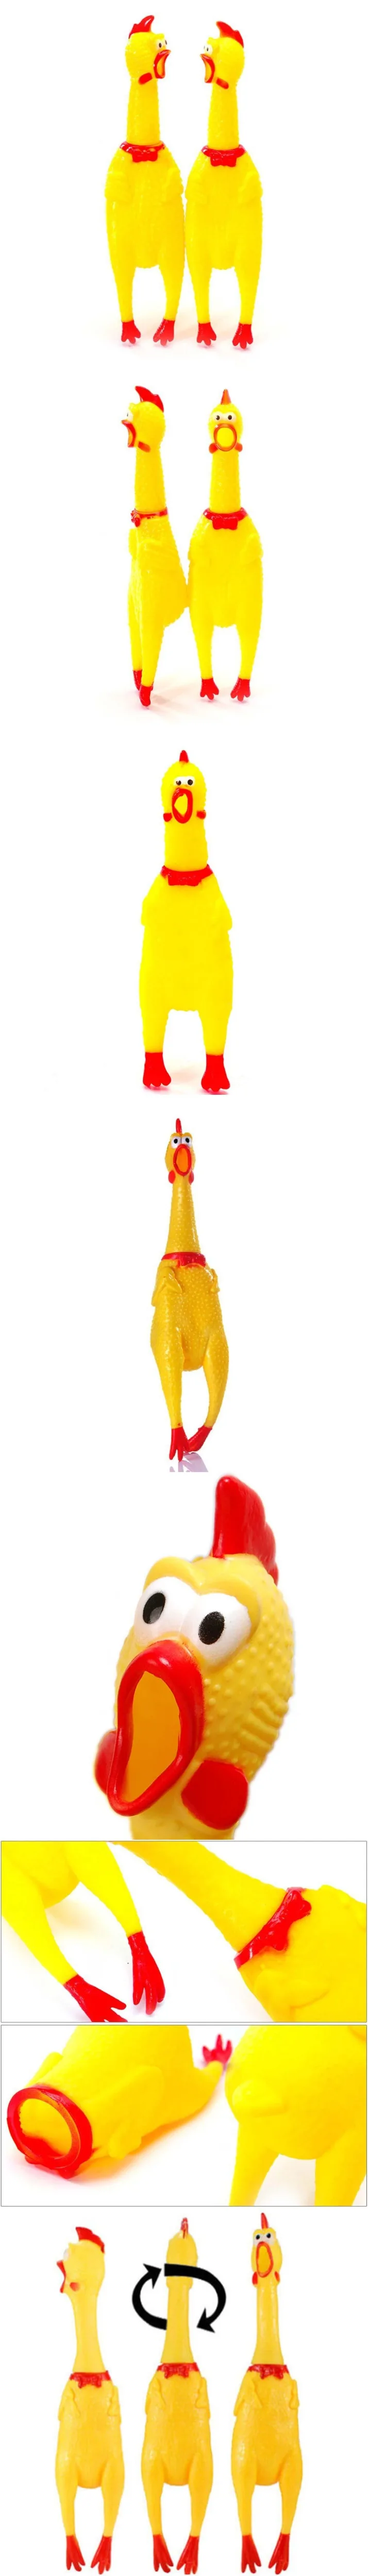 Желтый резиновая игрушка для домашних животных Подушка-собака кудахтанье Кричащие Shrilling резиновая курица